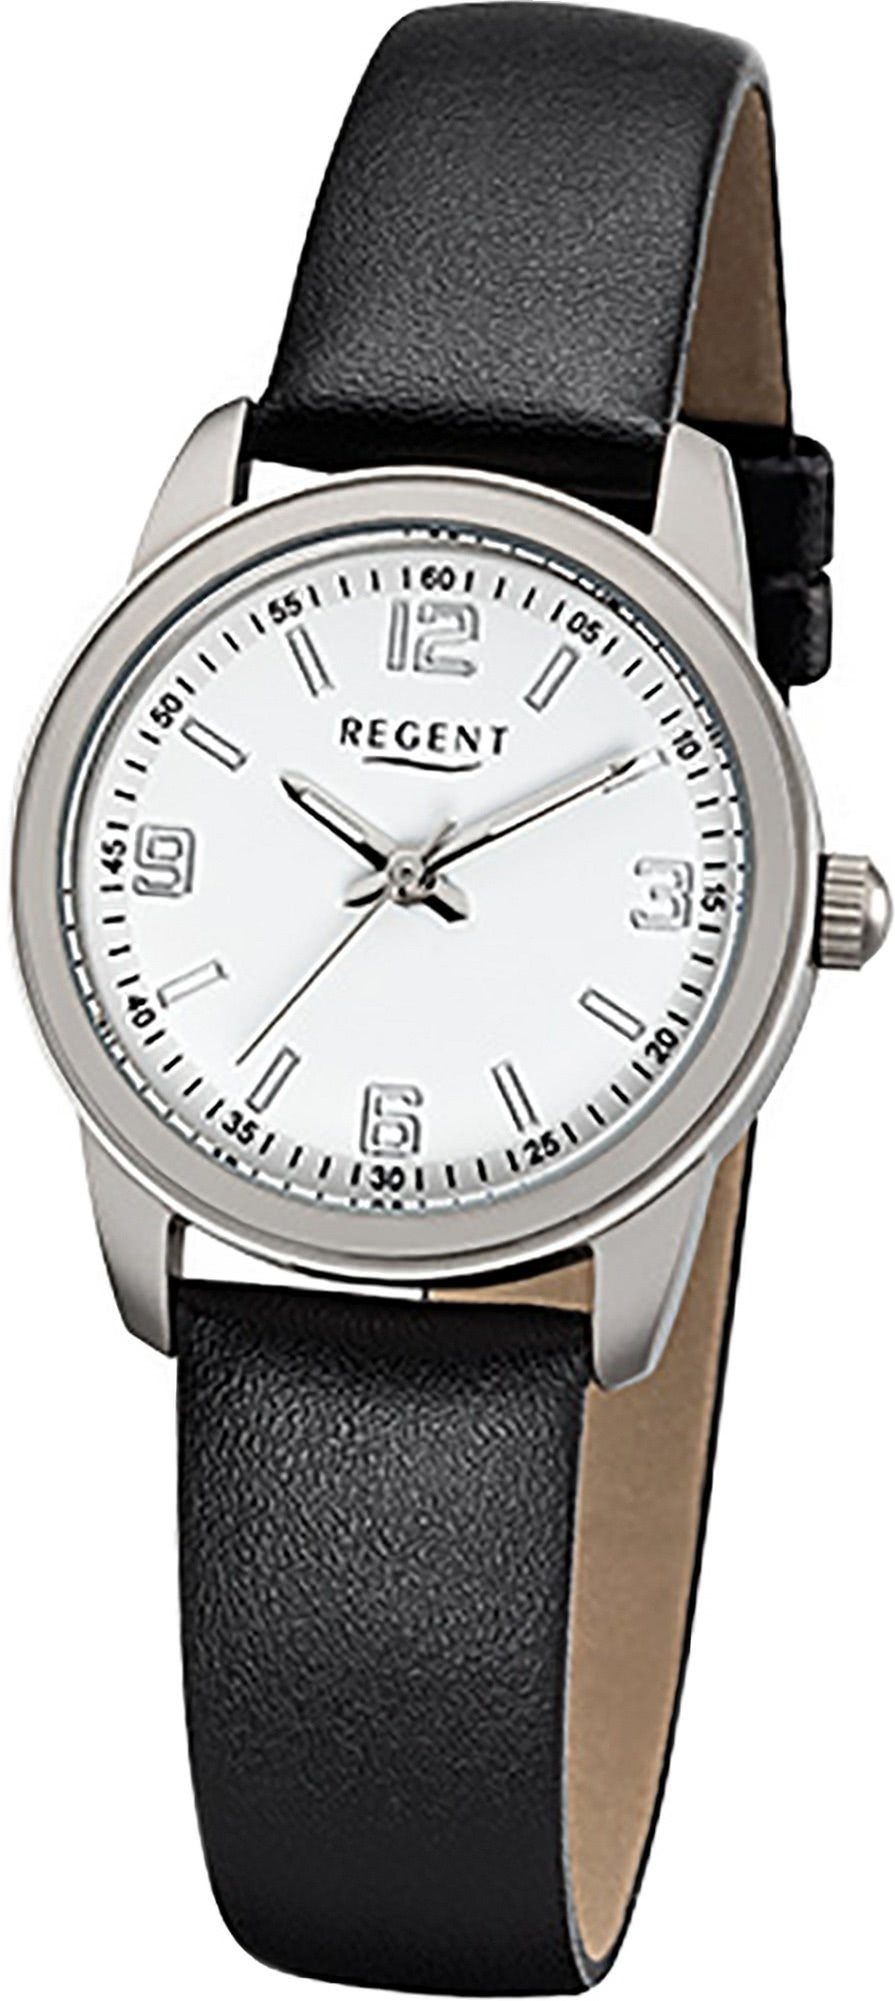 Regent Quarzuhr Regent Leder Damen Uhr F-1087 Quarzuhr, Damenuhr Lederarmband schwarz, rundes Gehäuse, klein (ca. 27mm)